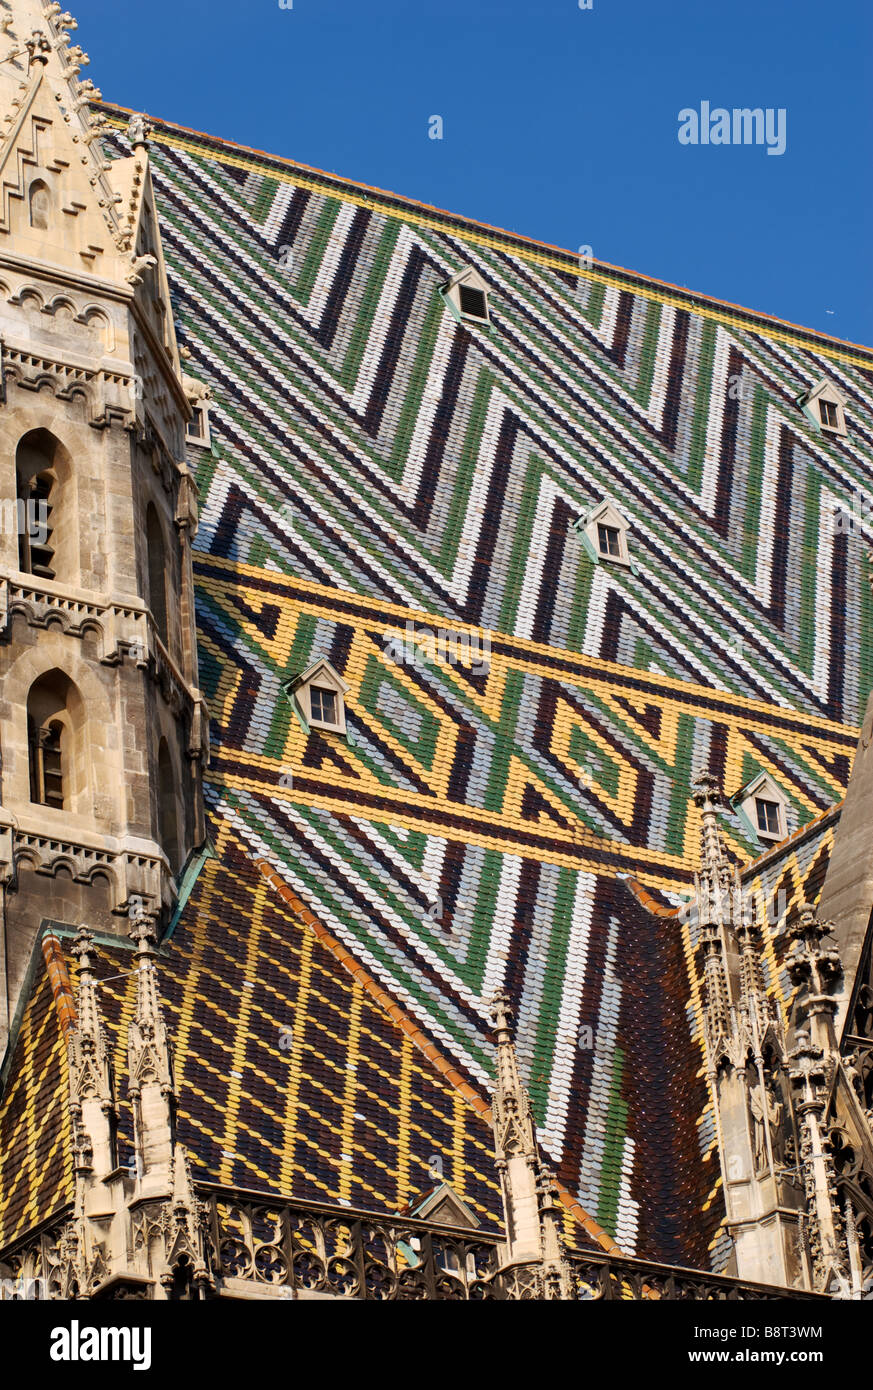 Azulejos de colores en techo de la Catedral Esteban Viena Austria Fotografía stock - Alamy